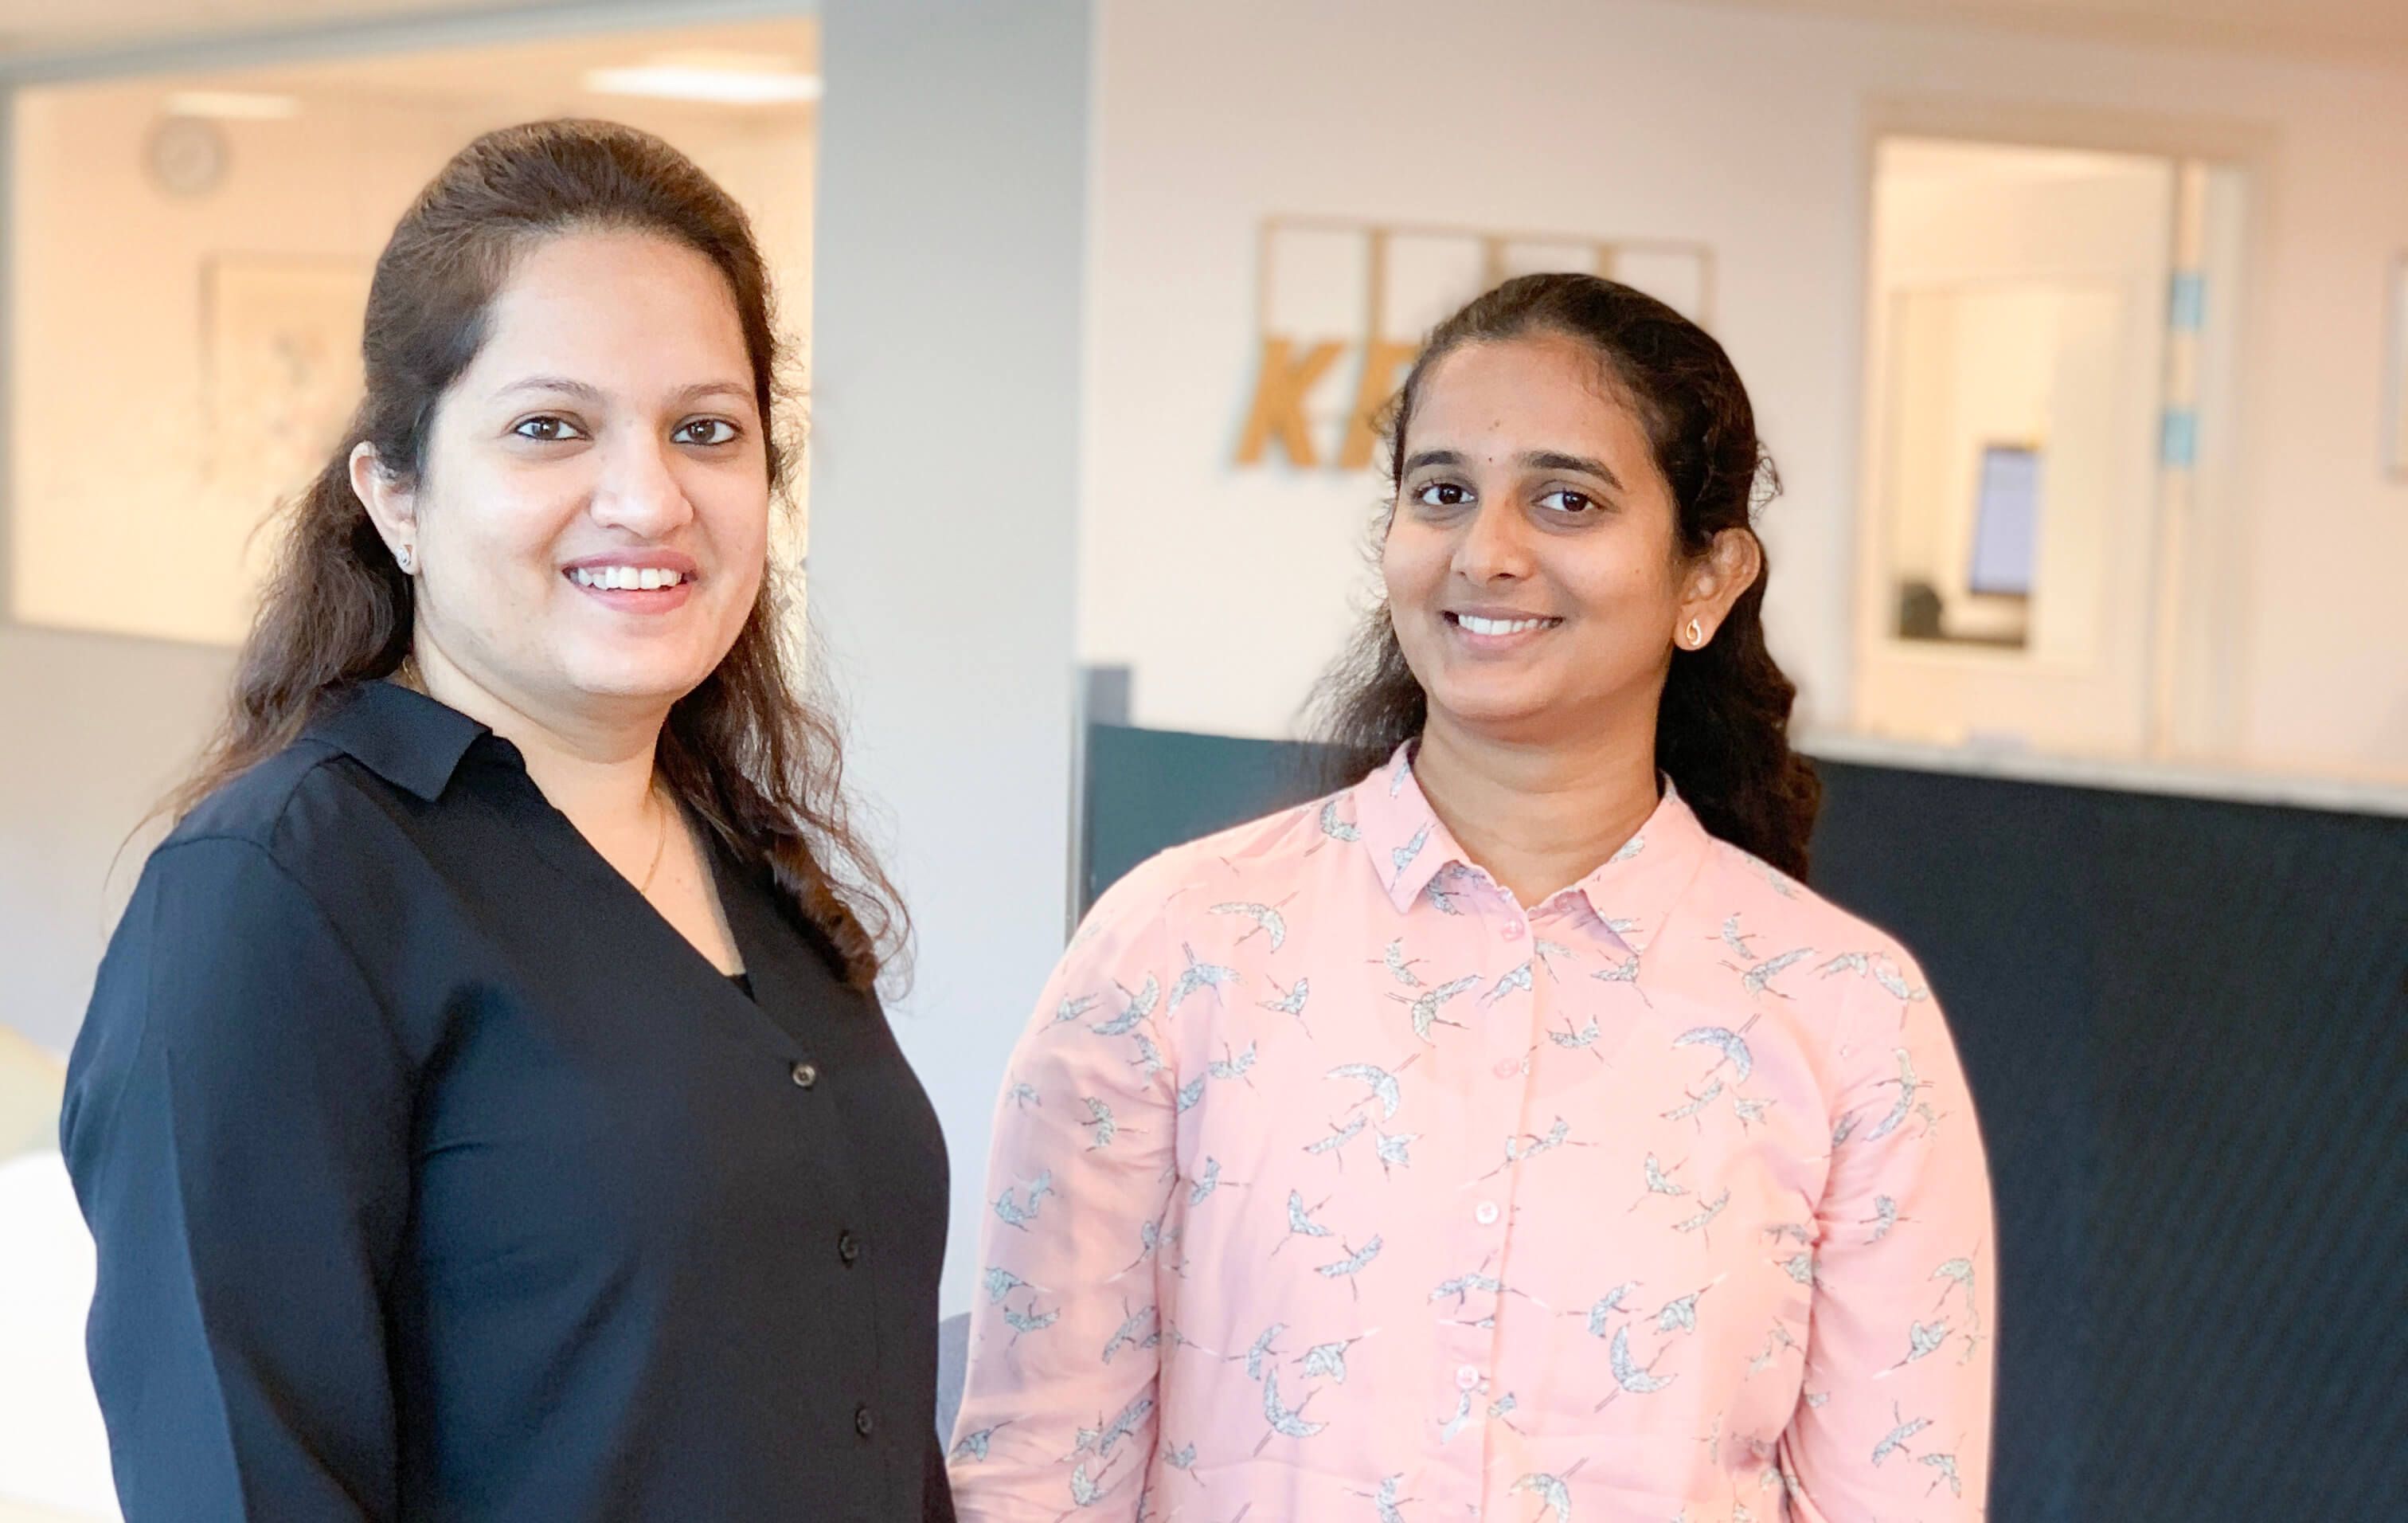 Garima Pareek och Bindushree Chandrappa, praktiserade på KPMG via initiativet Jobbsprånget och är idag fast anställda på KPMG som frontend-utvecklare.